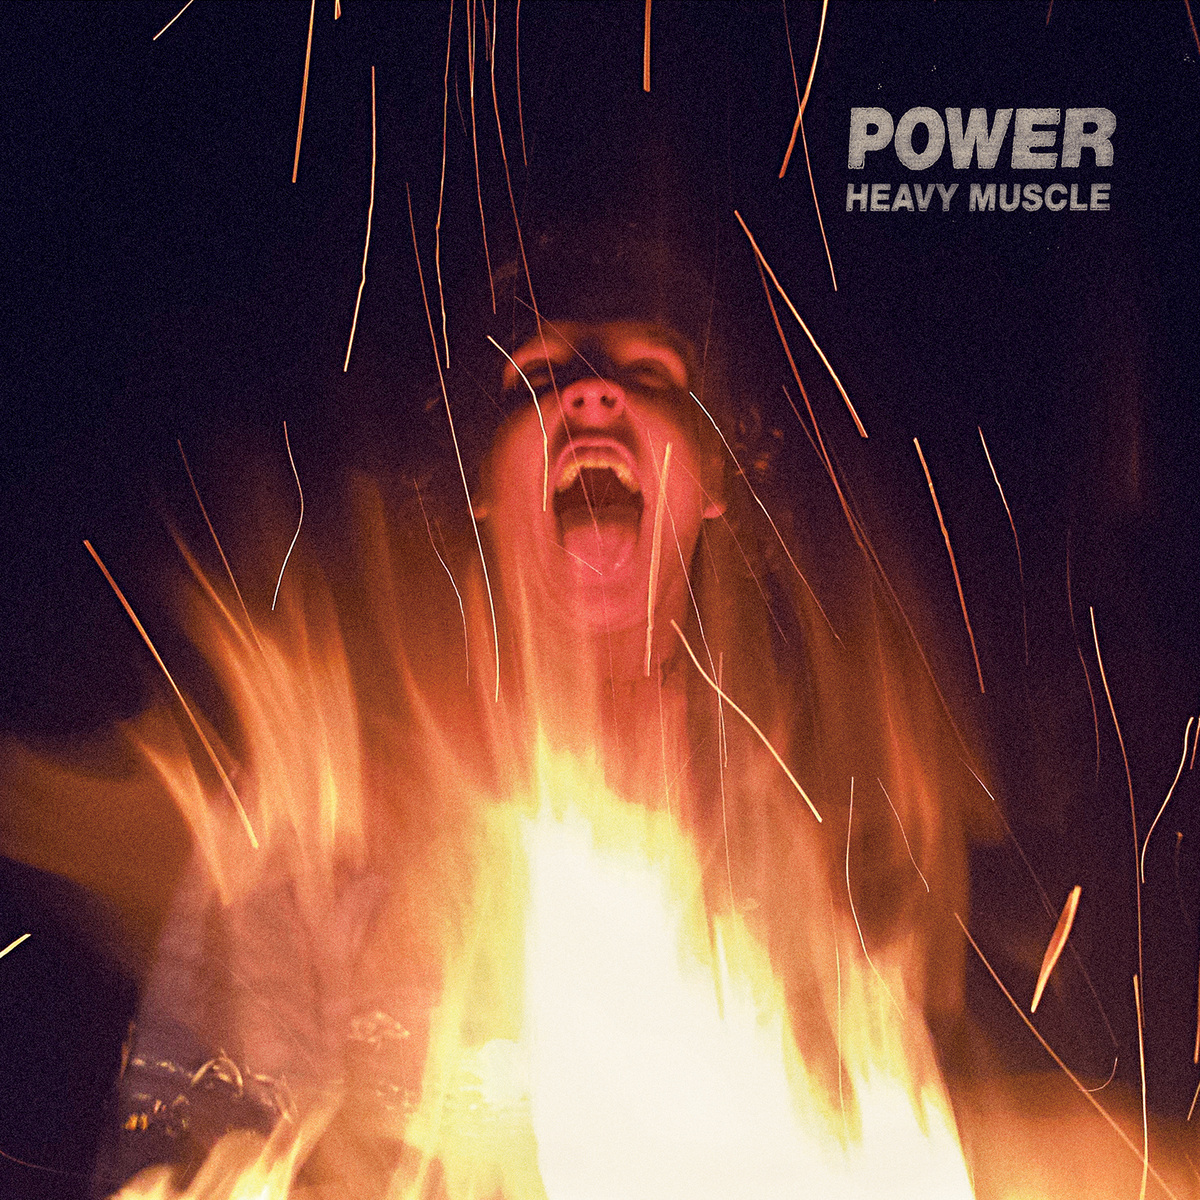 Power "Heavy Muscle"